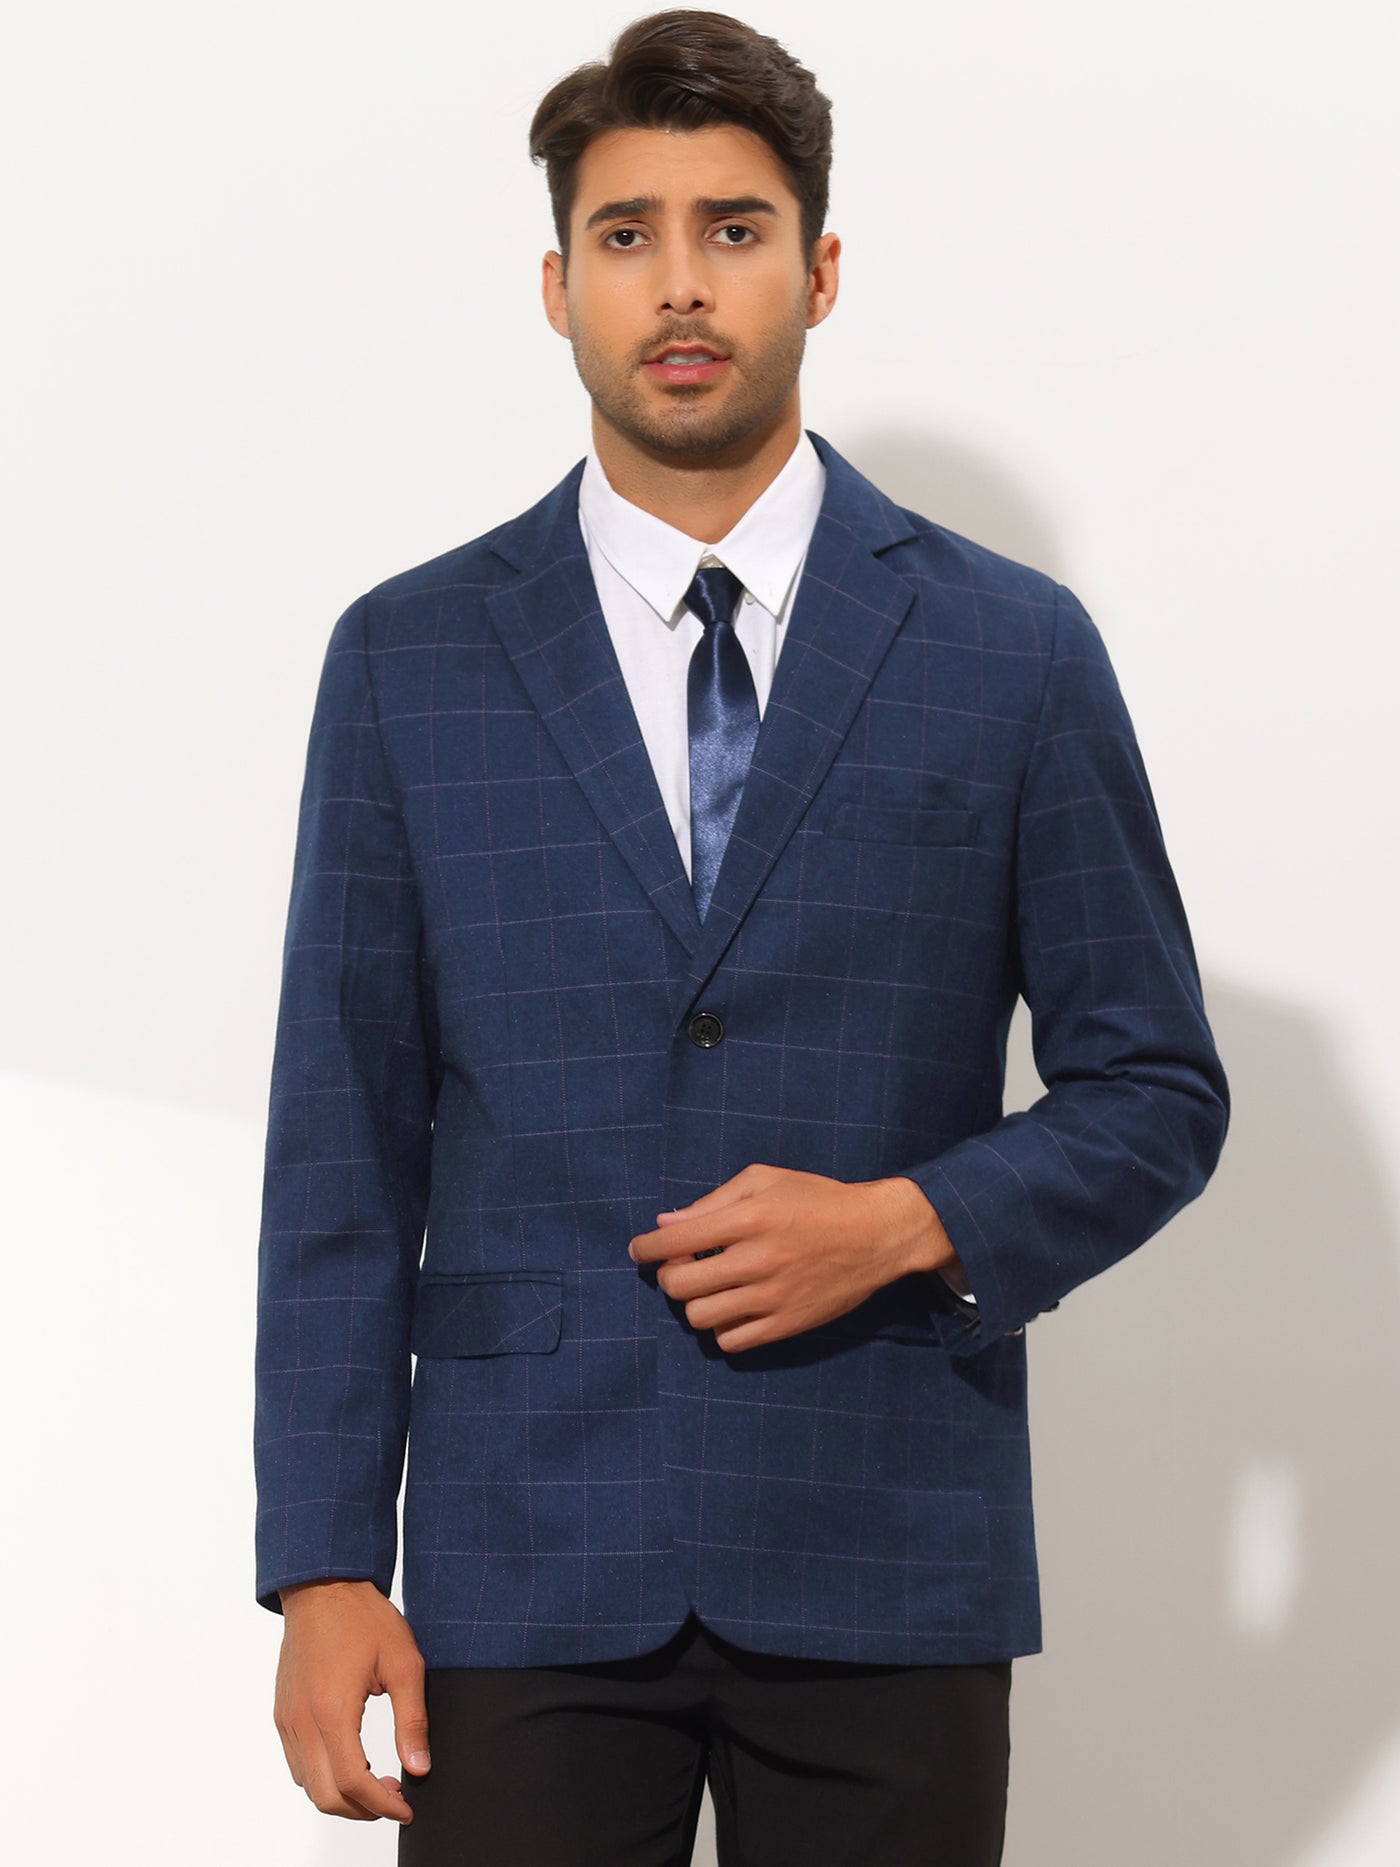 Bublédon Men's Plaid Casual Slim Fit Two Button Checked Suit Blazer Jackets